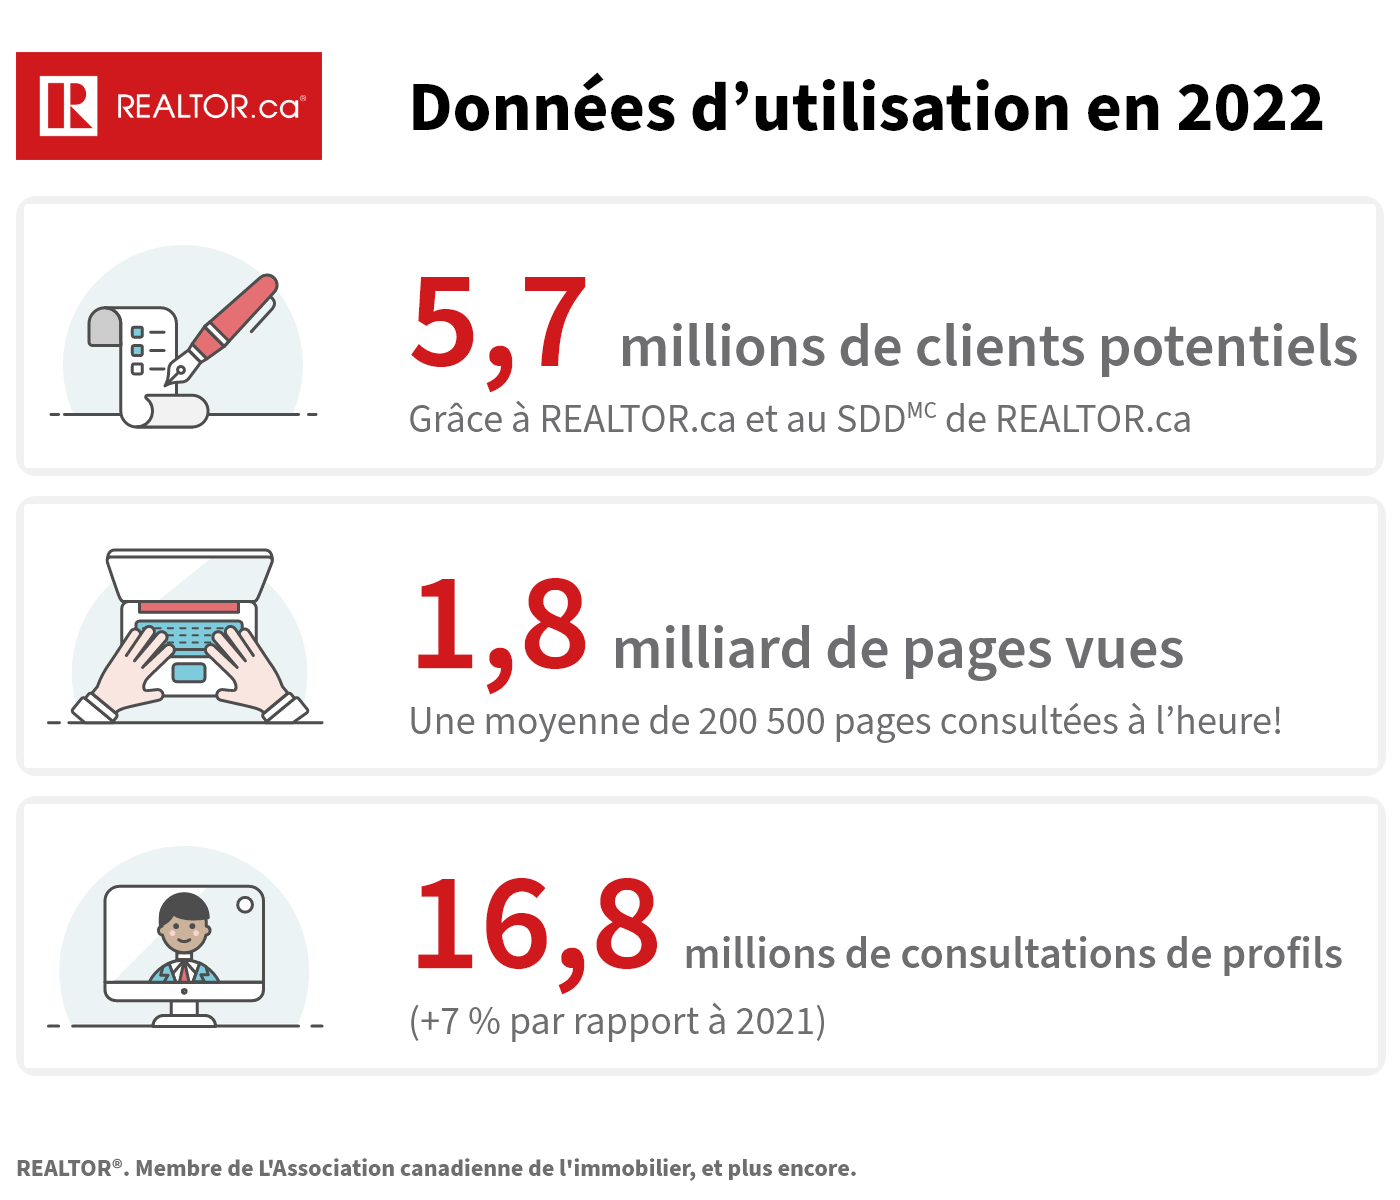 En 2022, REALTOR.ca et le SDD[MC] de REALTOR.ca ont dirigé 5,7 millions de clients potentiels vers les courtiers et agents. De plus, nous avons enregistré 1,8 milliard de pages vues et 16,8 millions de consultations de profils.